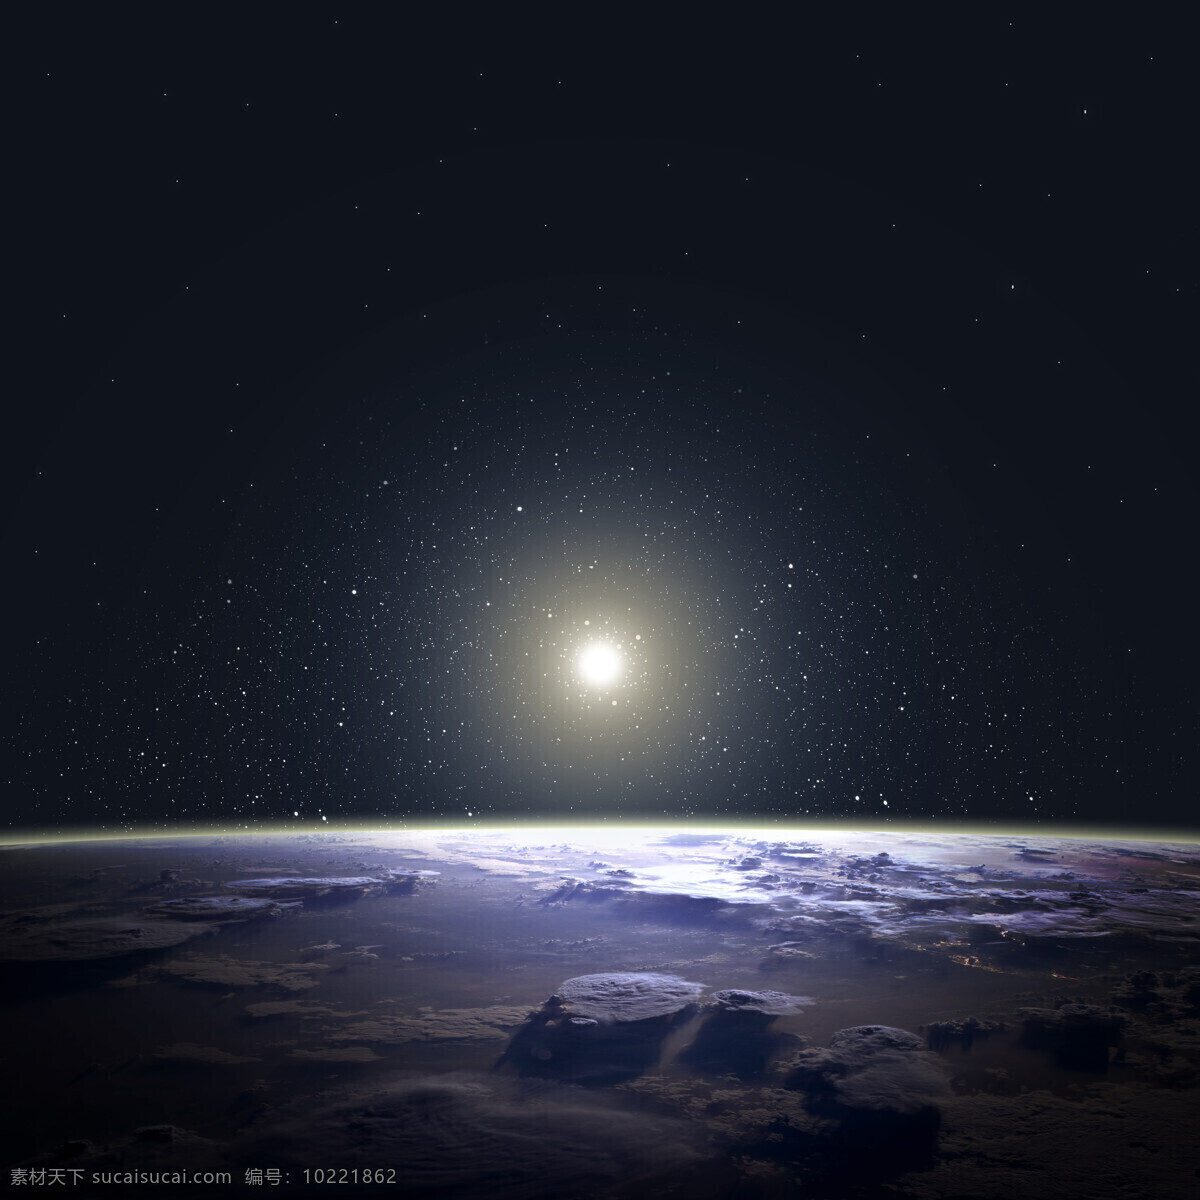 月球 表面 太阳 太空 星球 月球表面 行星 自然科学 星象 月球图片 其他类别 生活百科 黑色